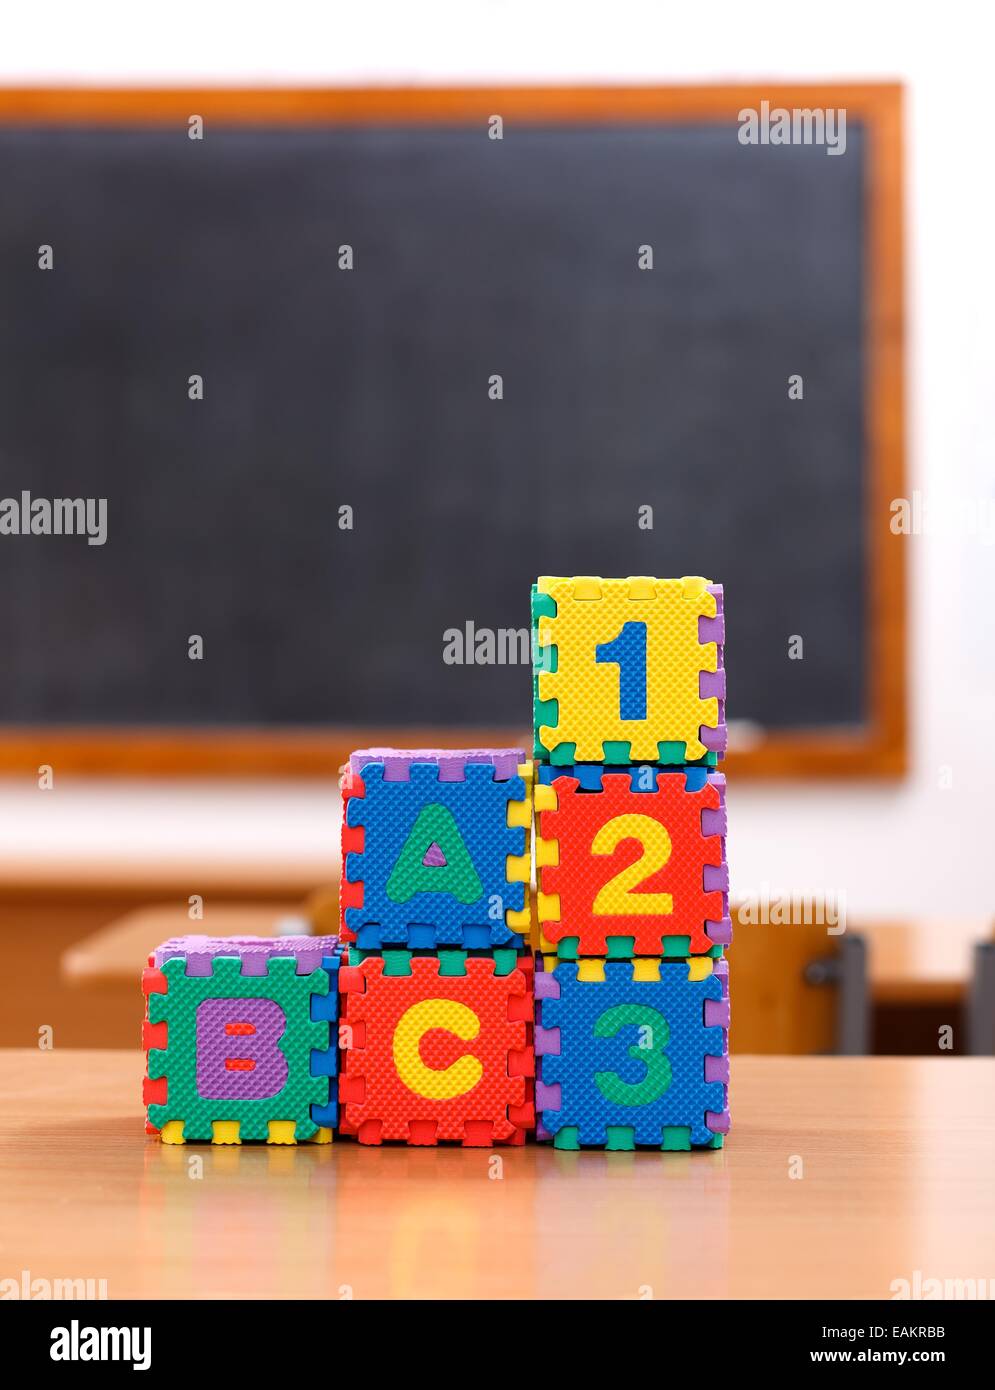 Buchstabe und Zahl Puzzle Spielzeug auf Tisch im leeren Klassenzimmer  Stockfotografie - Alamy